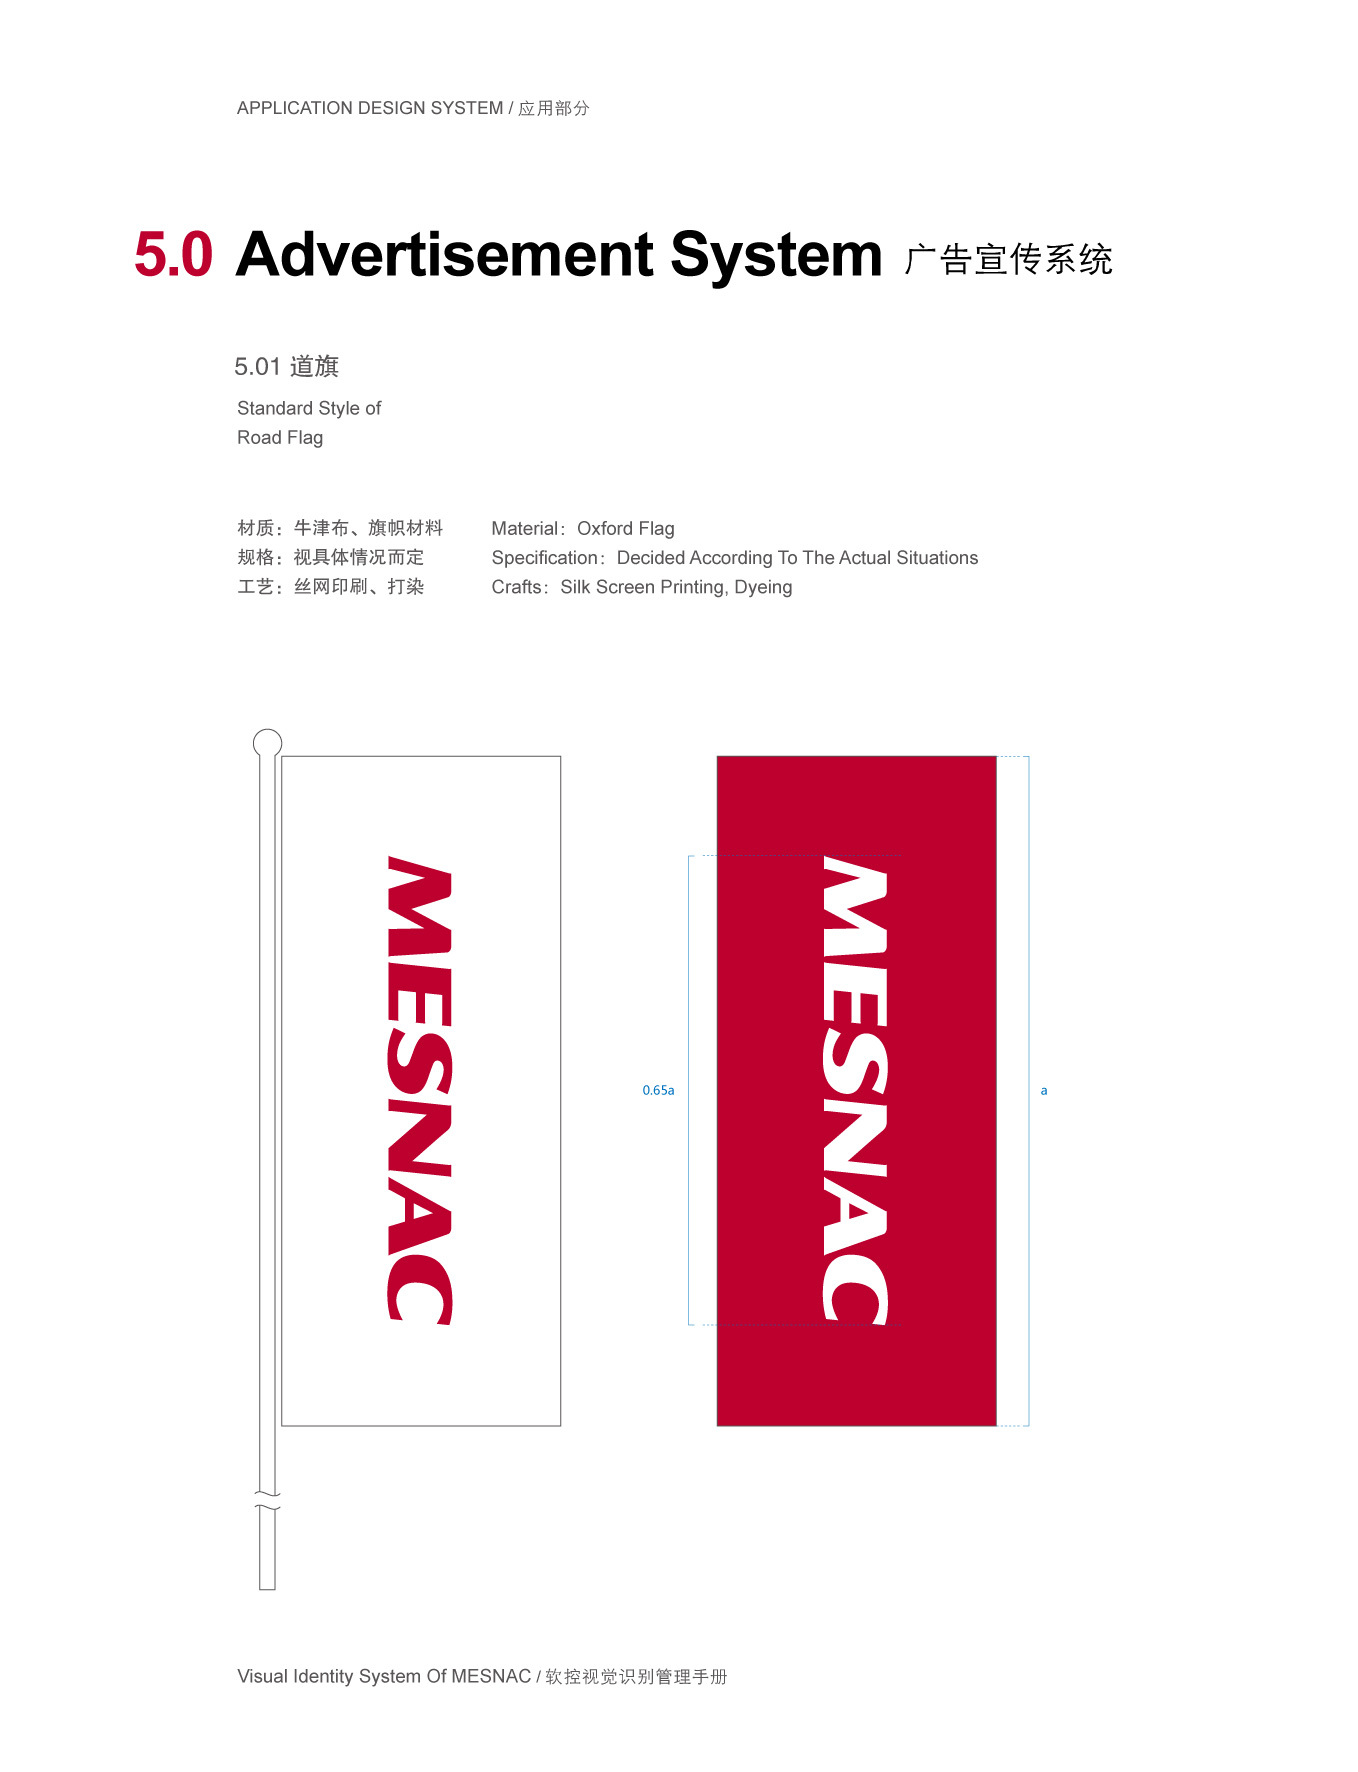 上市公司-軟控集團品牌logo及VI設計圖215